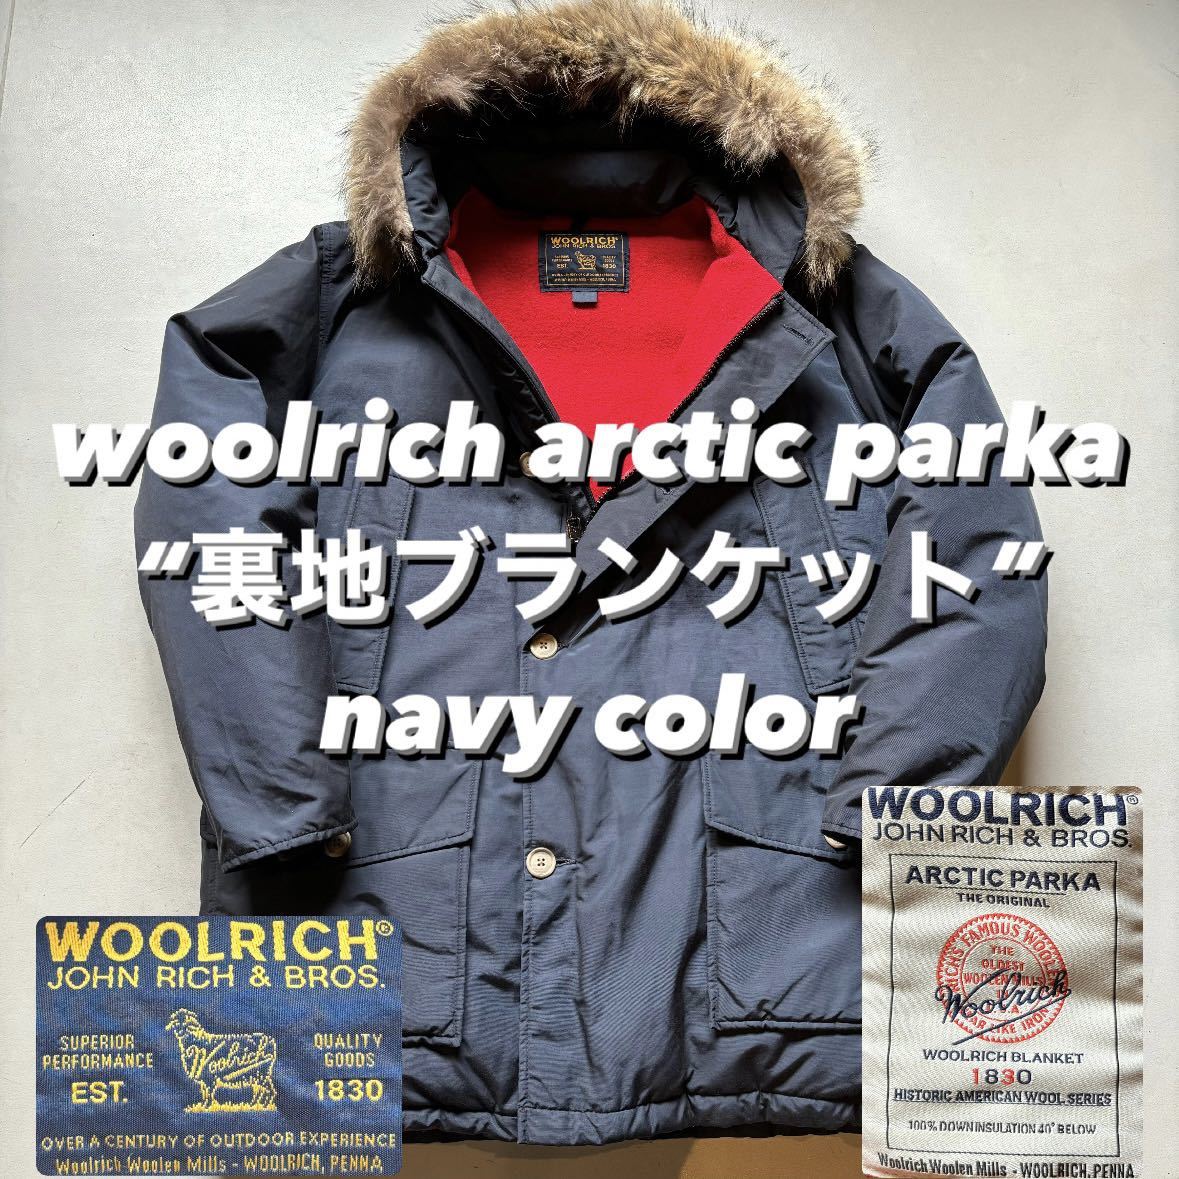 woolrich arctic parka “裏地ブランケット” ウールリッチ アークティックパーカー ダウンジャケット